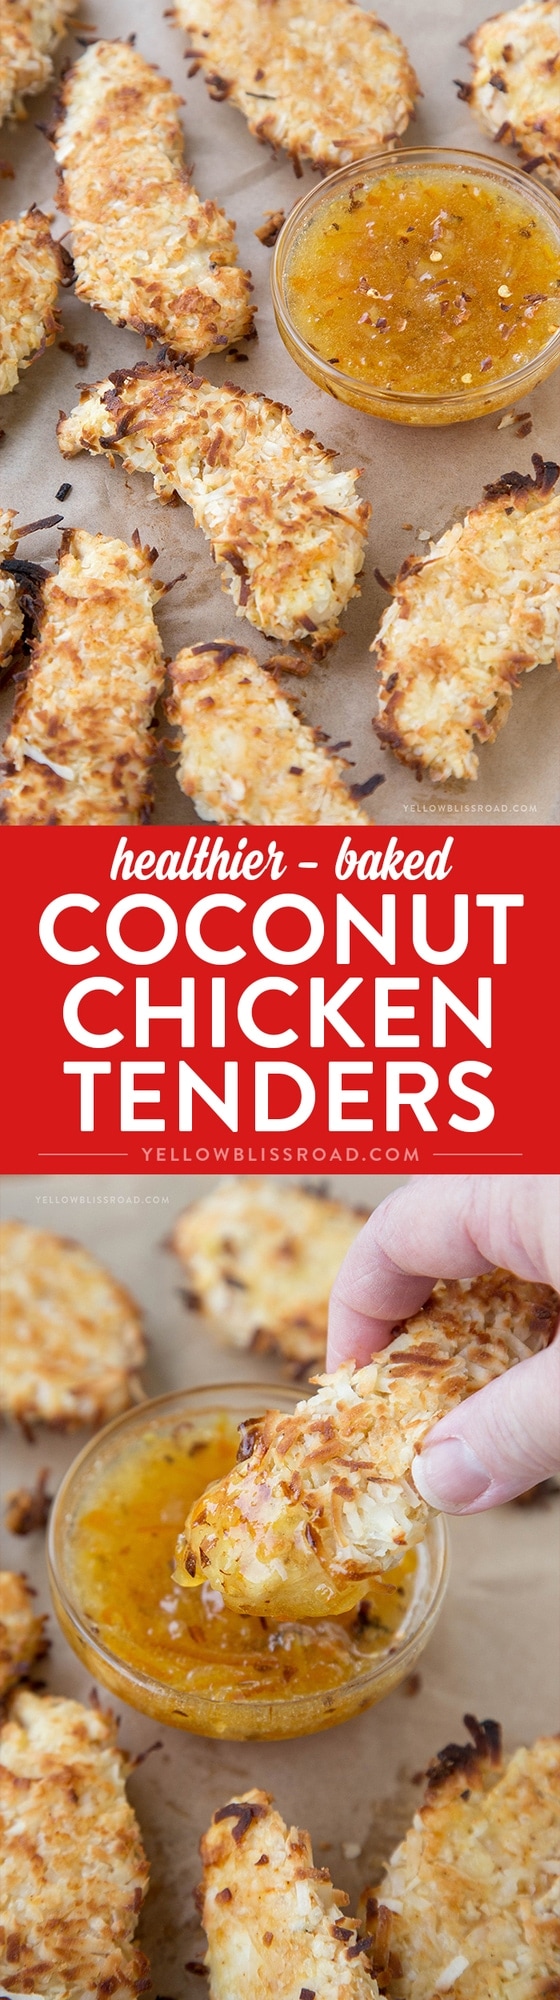 Healthier Baked Coconut Chicken Tenders